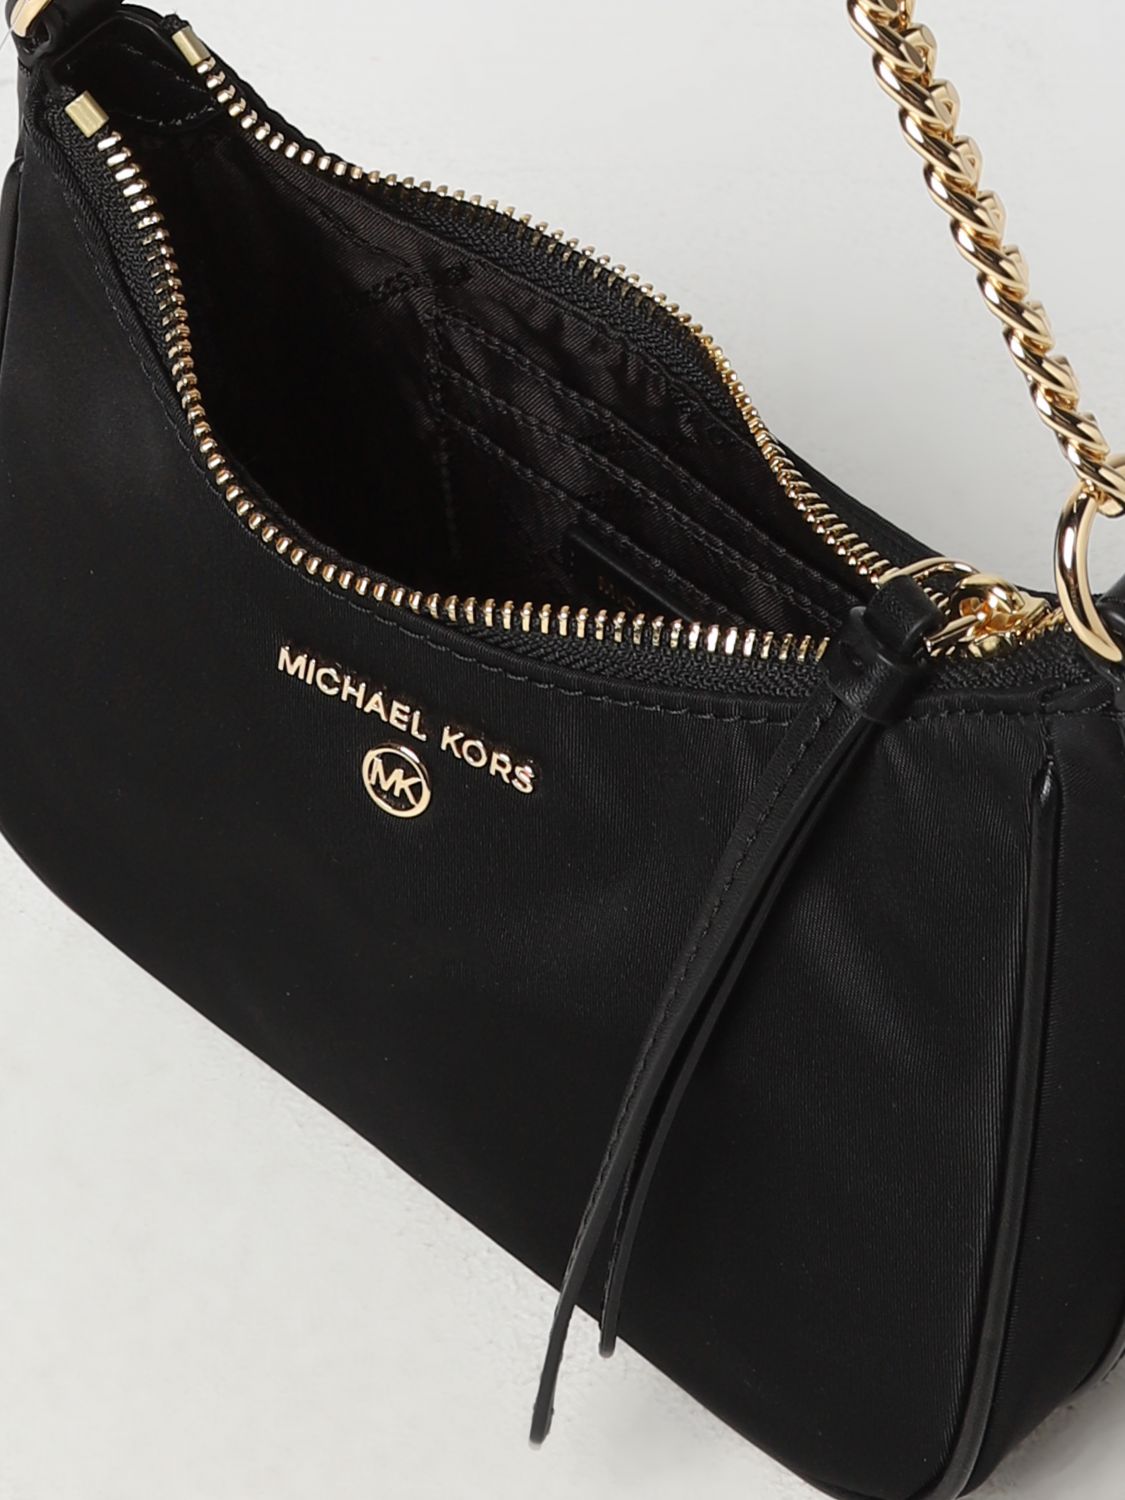 MICHAEL KORS: mini bag for woman - Black  Michael Kors mini bag 32S3G9HC0L  online at